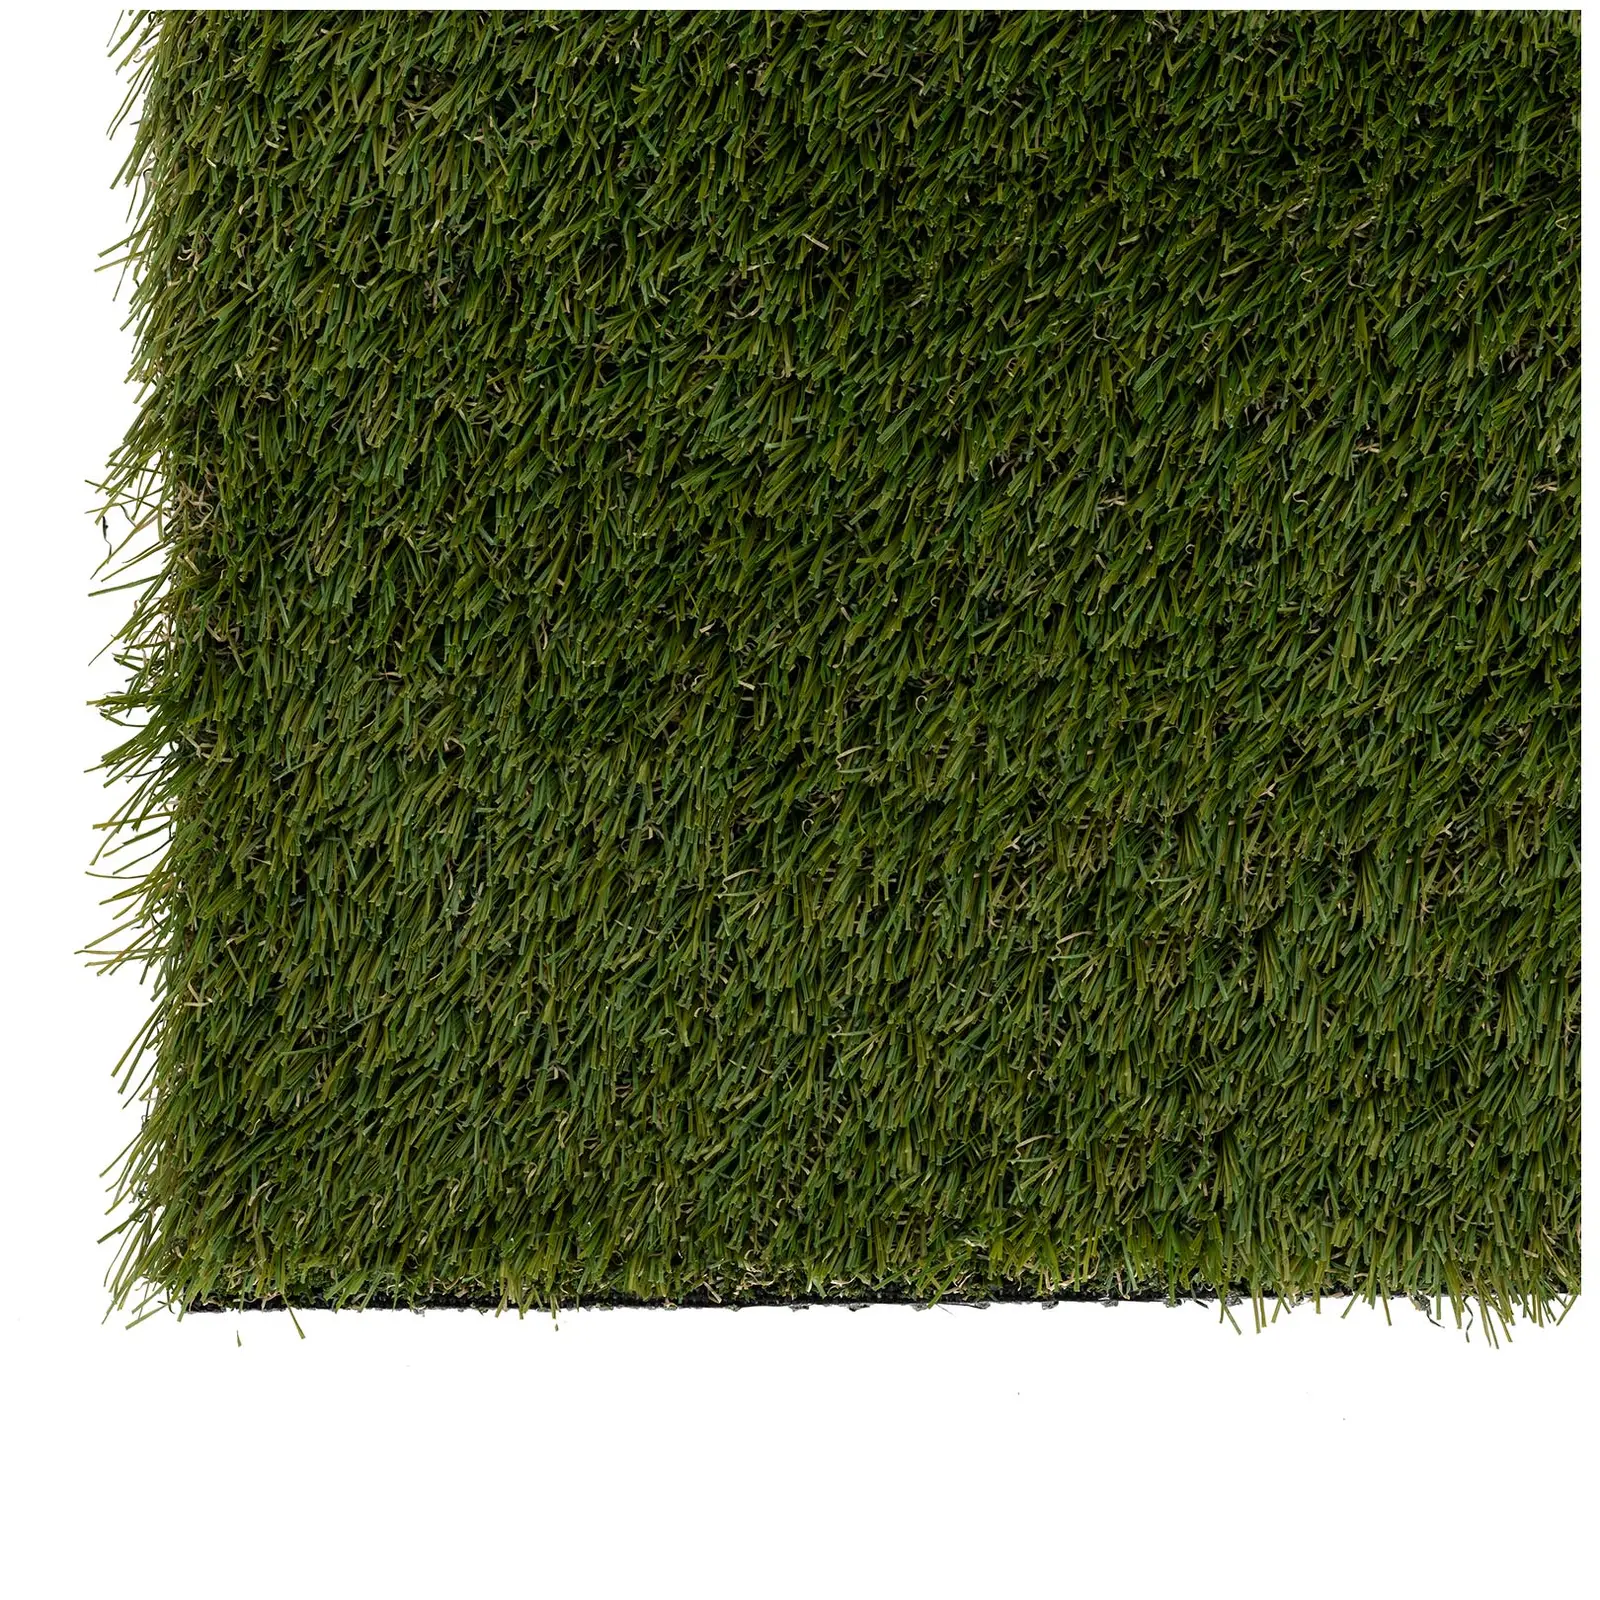 Umělý trávník - 403 x 100 cm - výška: 30 mm - hustota stehů: 20/10 cm - odolný proti UV záření